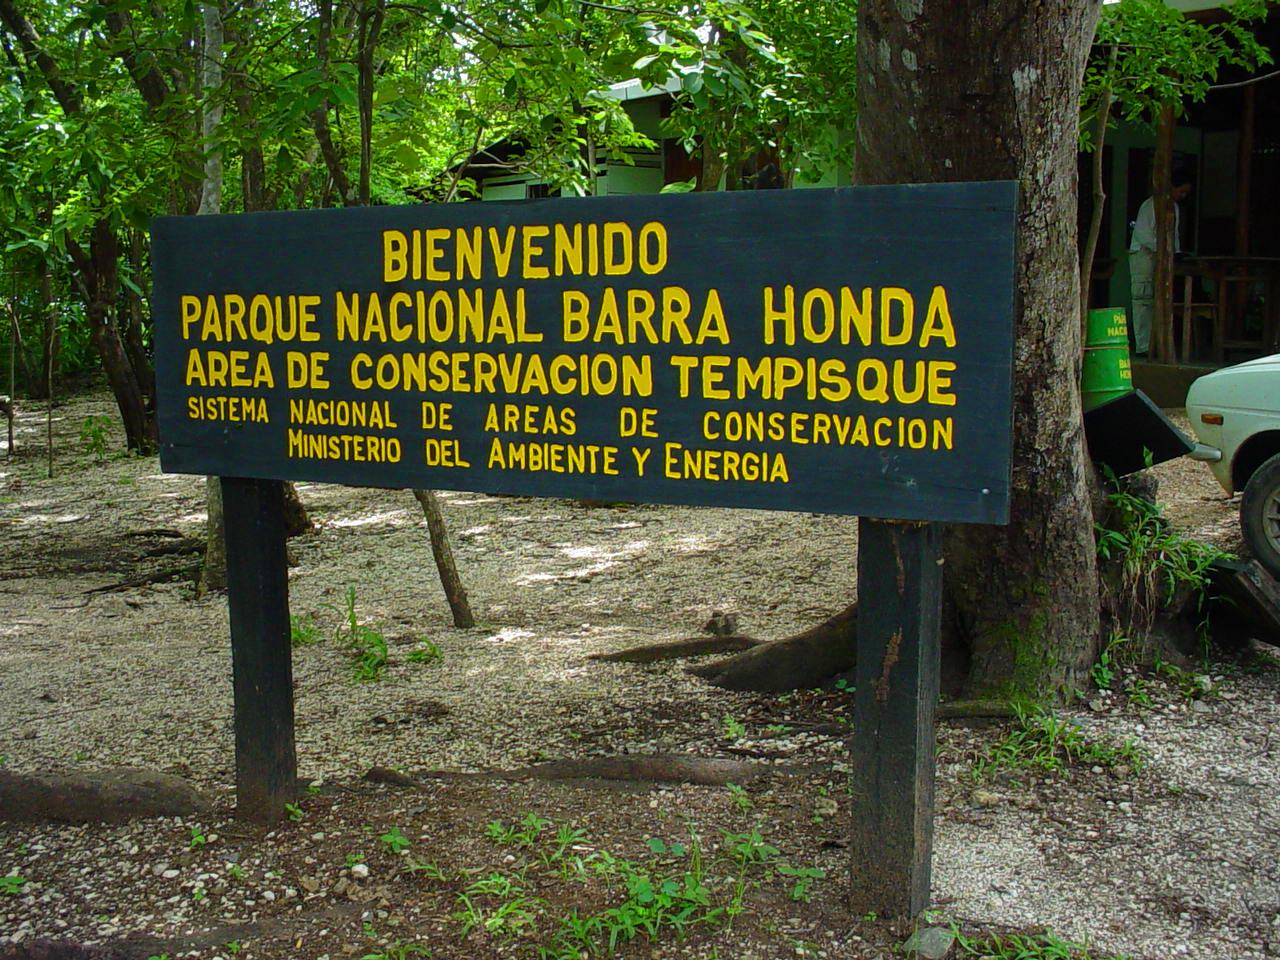 Parque nacional barra honda guanacaste costa rica #2